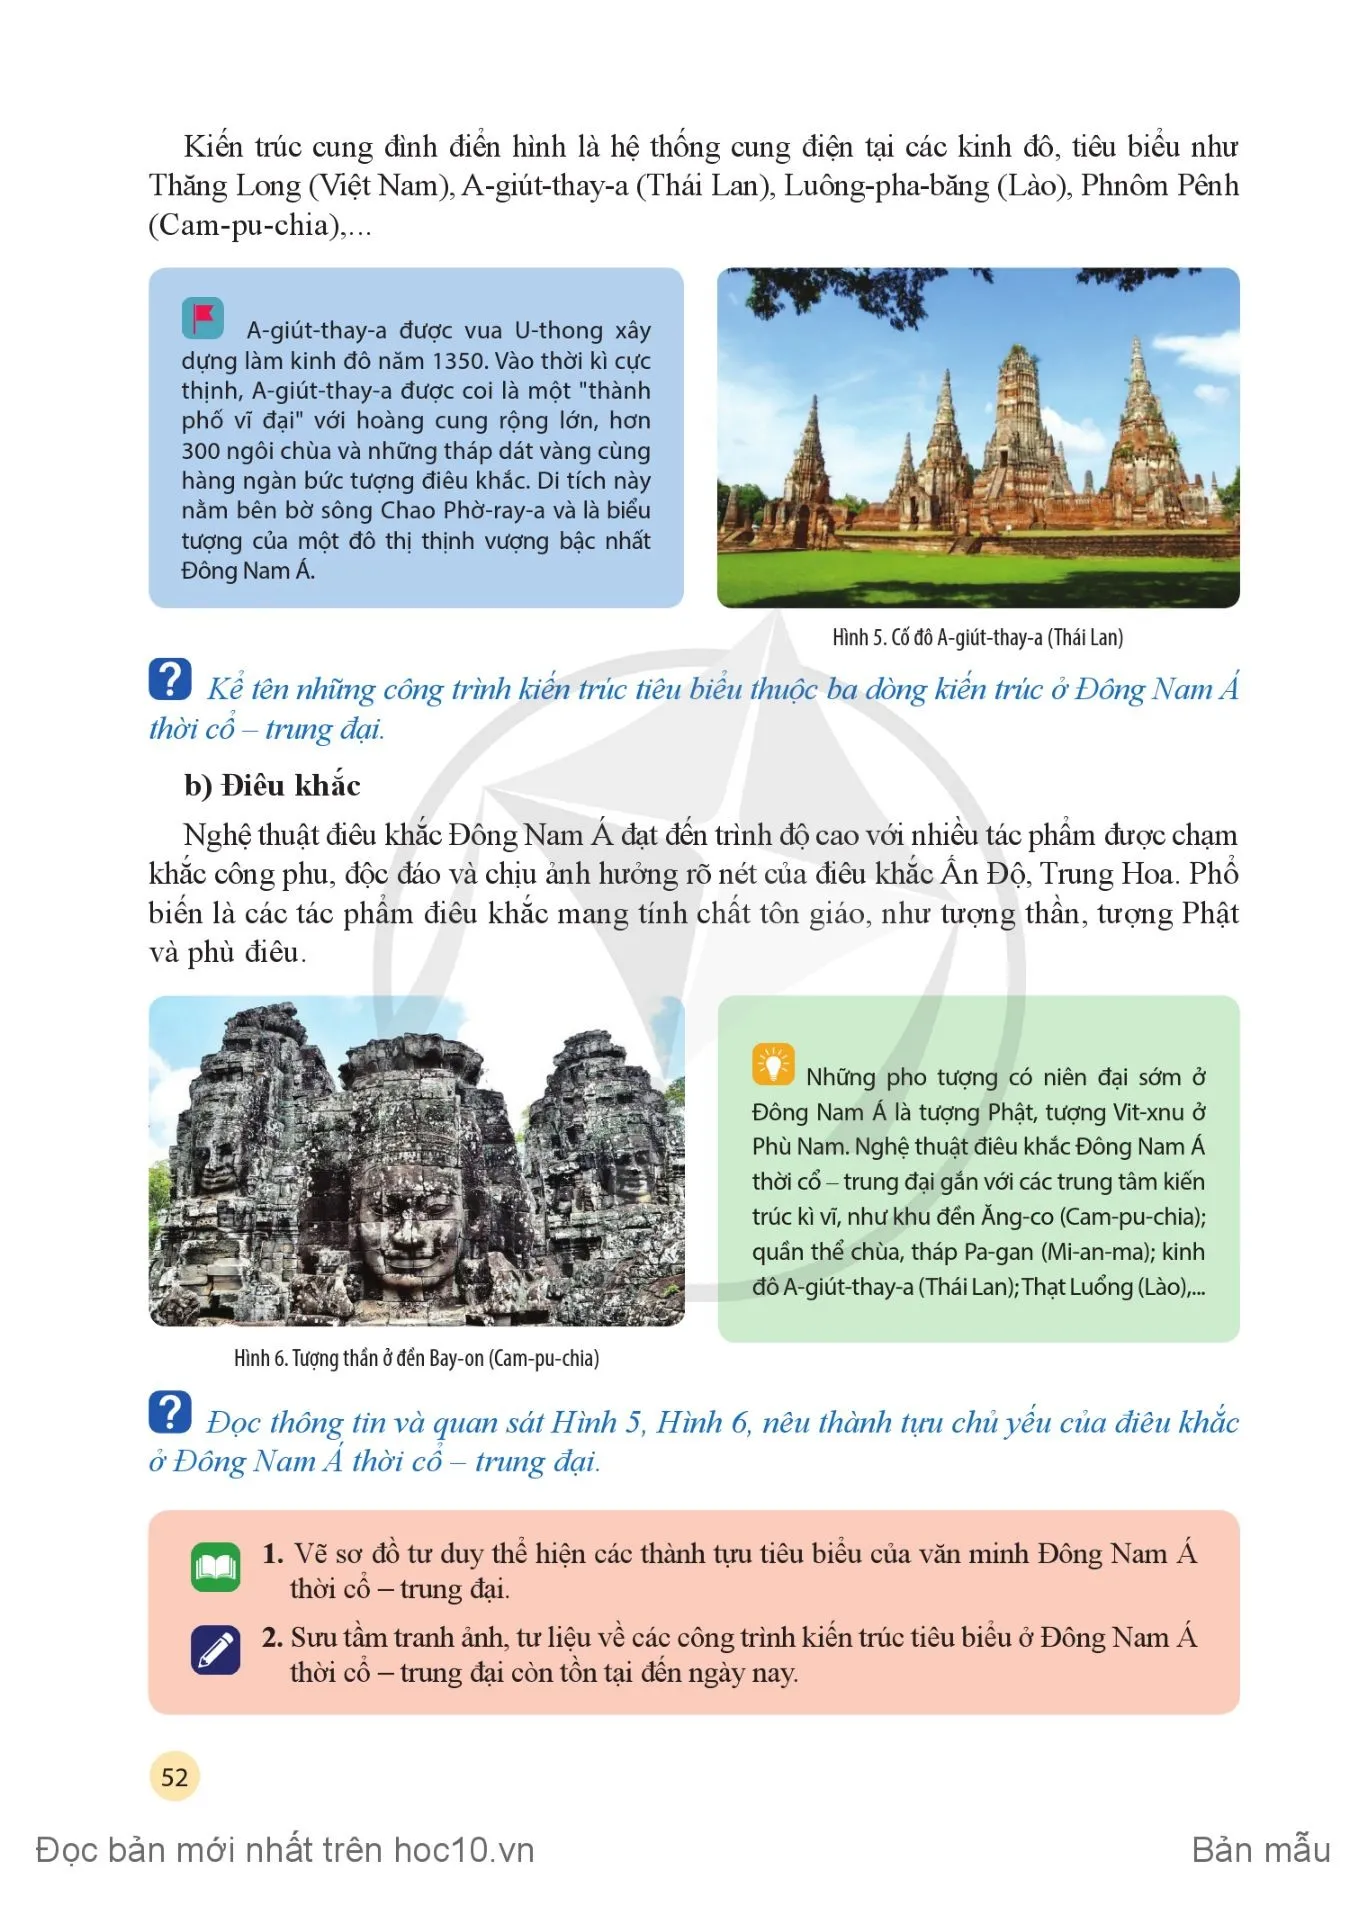 Bài 9: Thành tựu tiêu biểu của văn minh Đông Nam Á thời cổ — trung đại